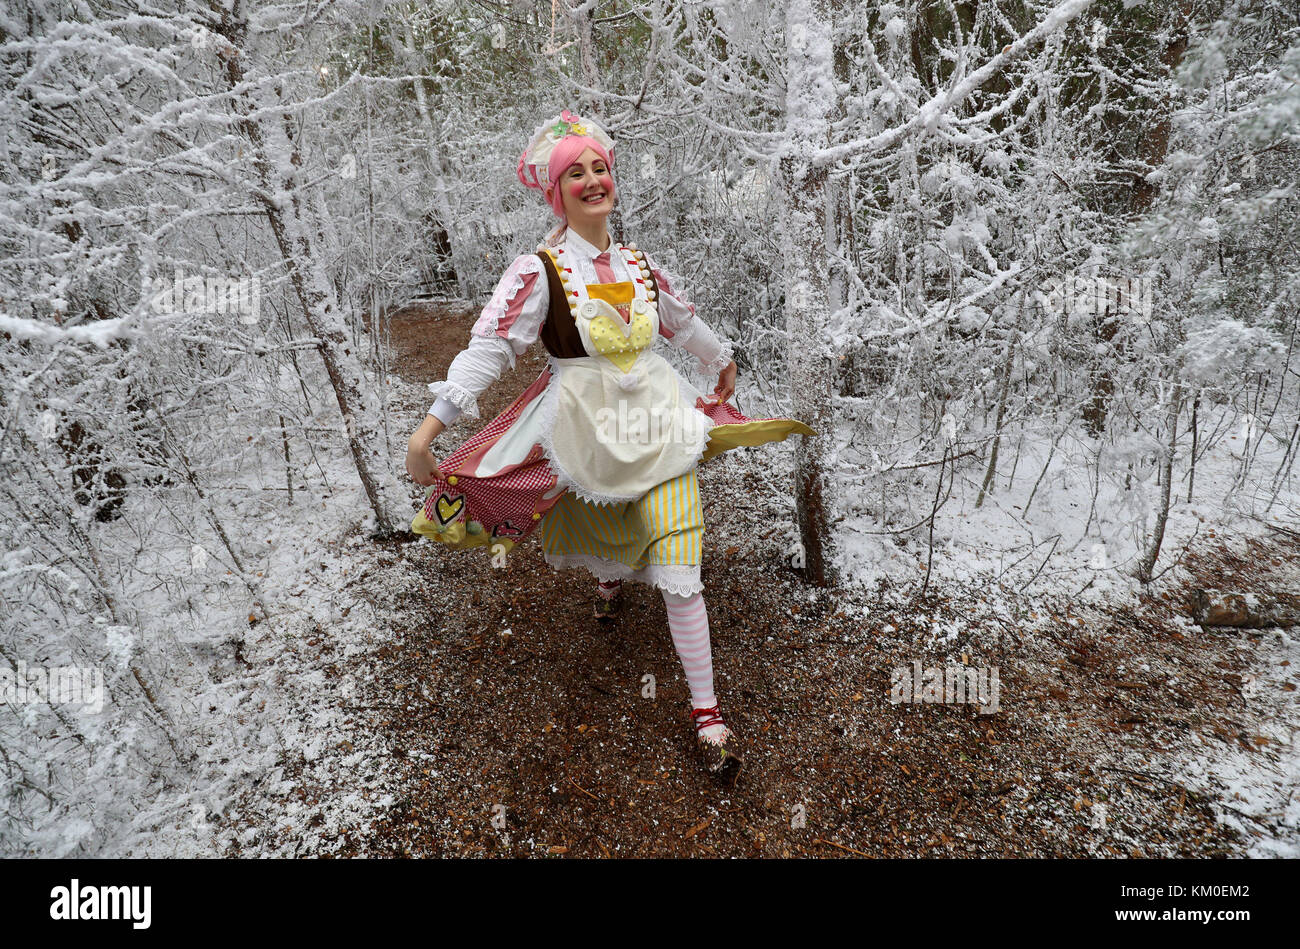 Elf Mixie Pixie fa il suo modo attraverso la coperta di neve il percorso al 'Arctic' wonderland di LaplandUK, un visitatore attrazione nella foresta Whitmoor, Ascot Berkshire. Foto Stock